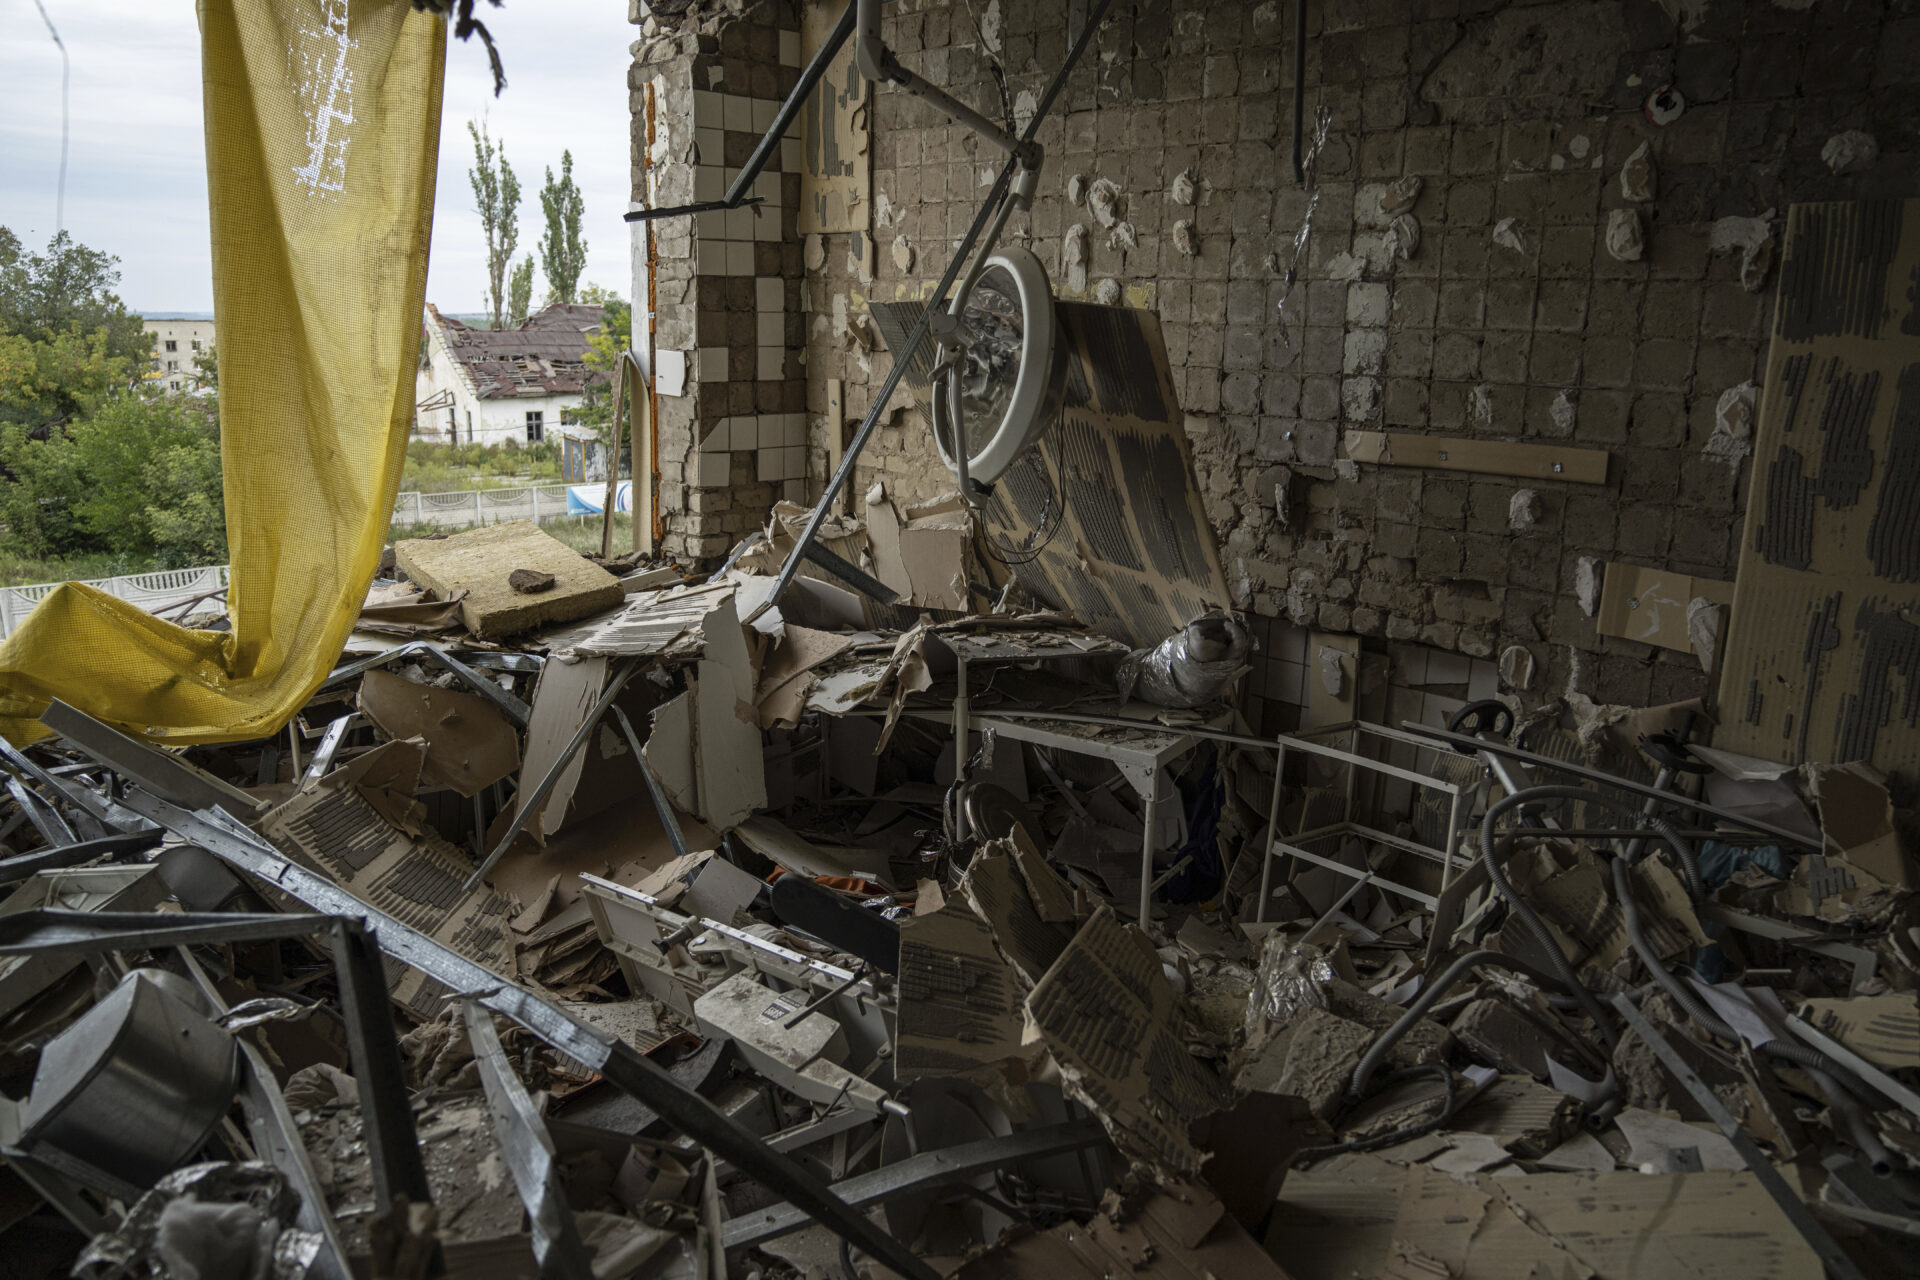 PREHĽAD UDALOSTÍ (24. 10.): Ukrajinská armáda na juhu zničila ruský radarový systém